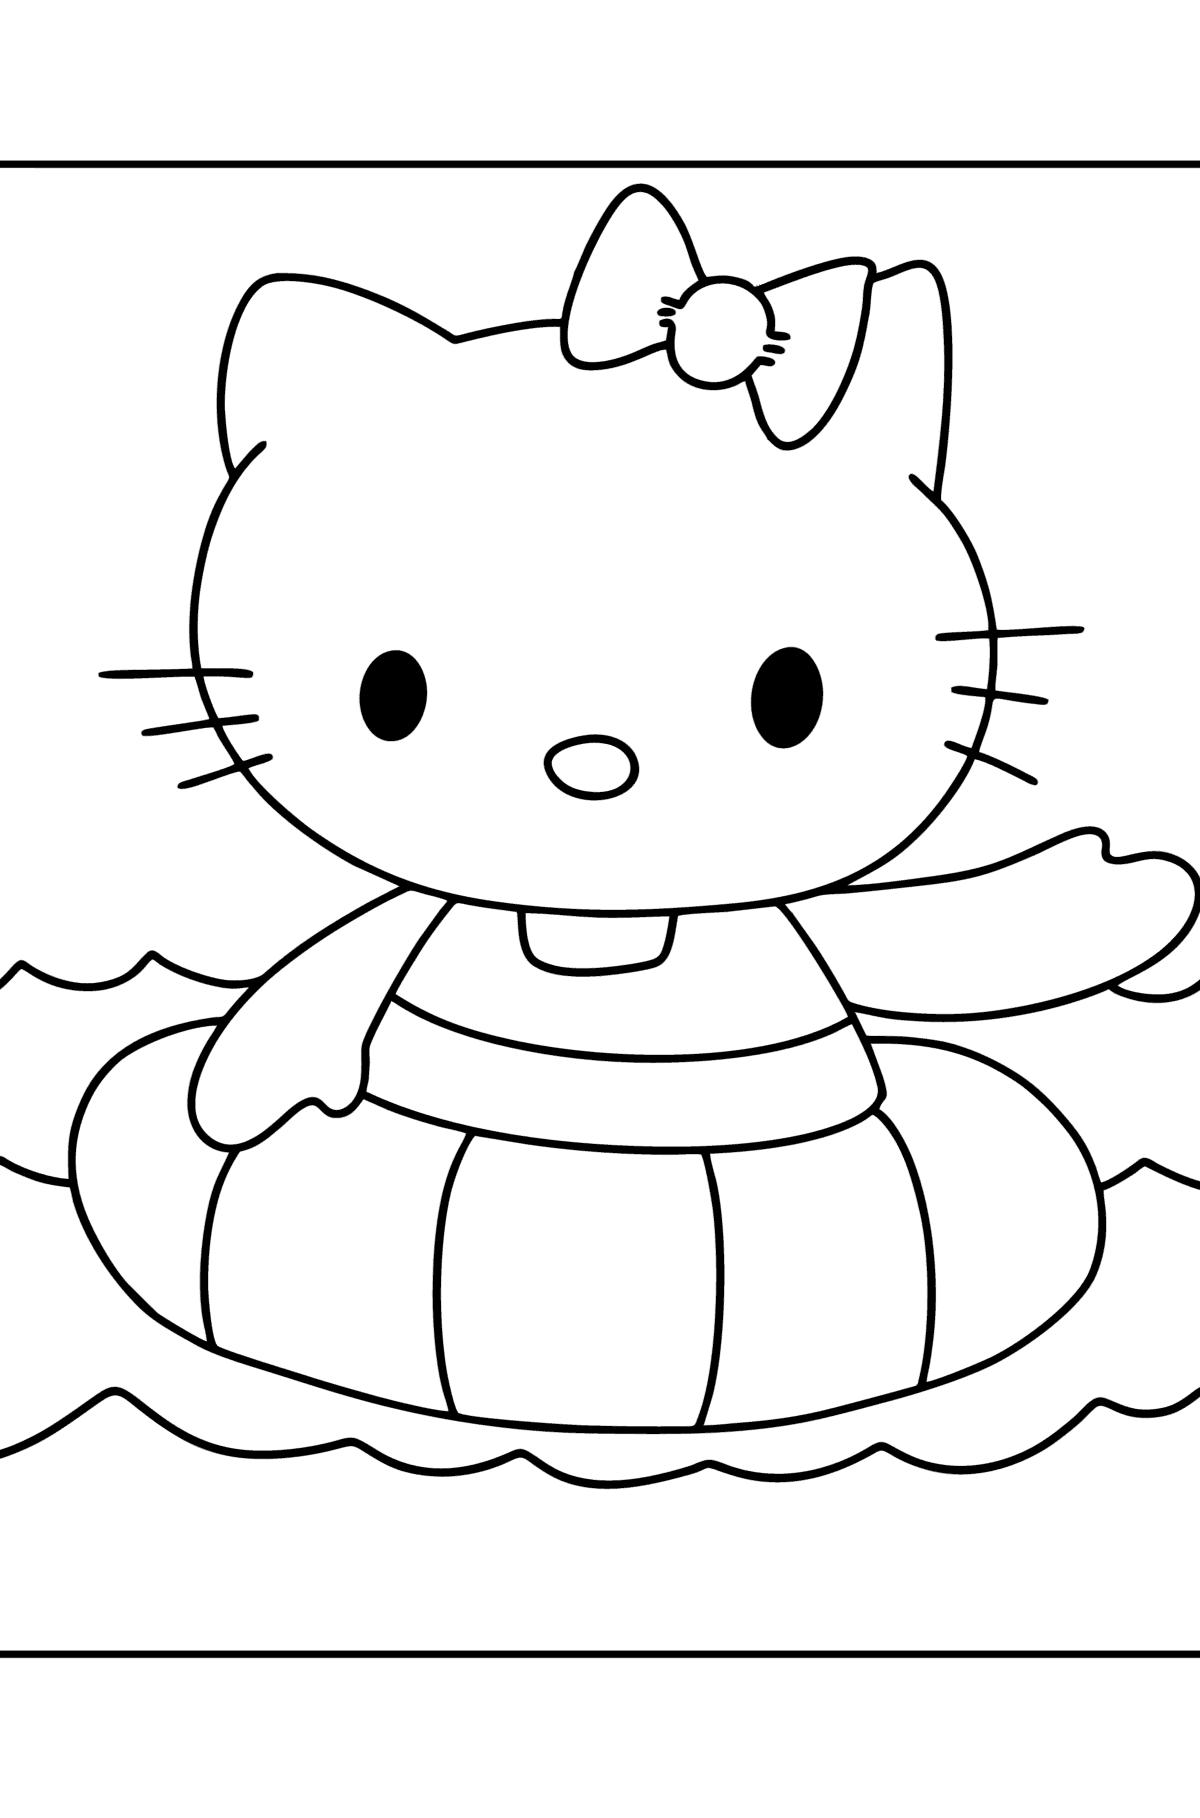 Boyama sayfası Hello Kitty yüzer - Boyamalar çocuklar için